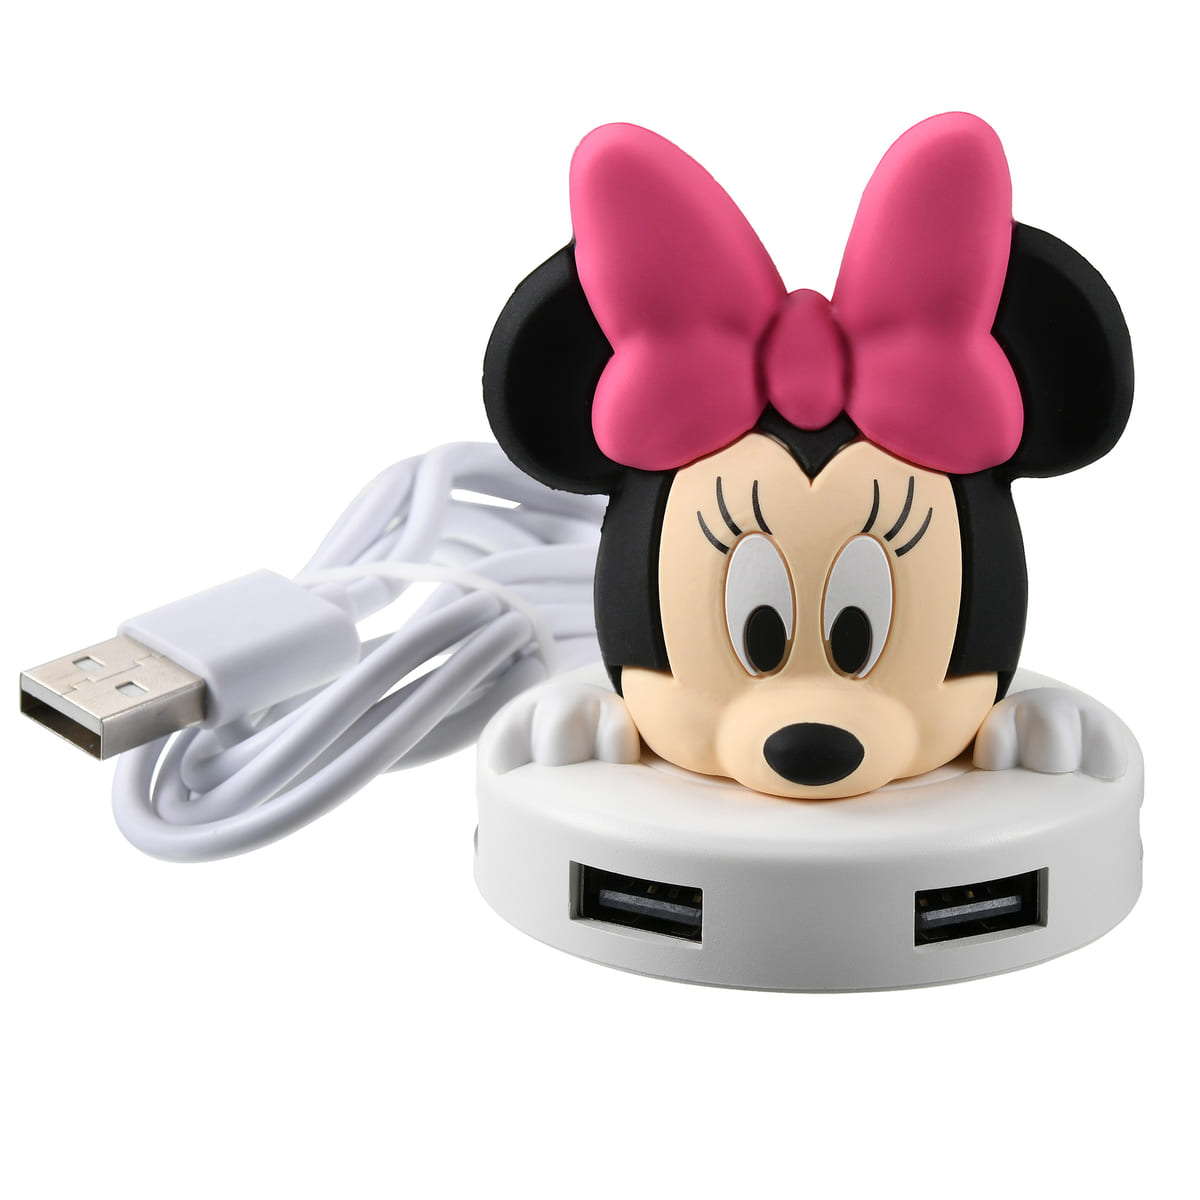 USBハブ 4ポート「ミニーマウス」